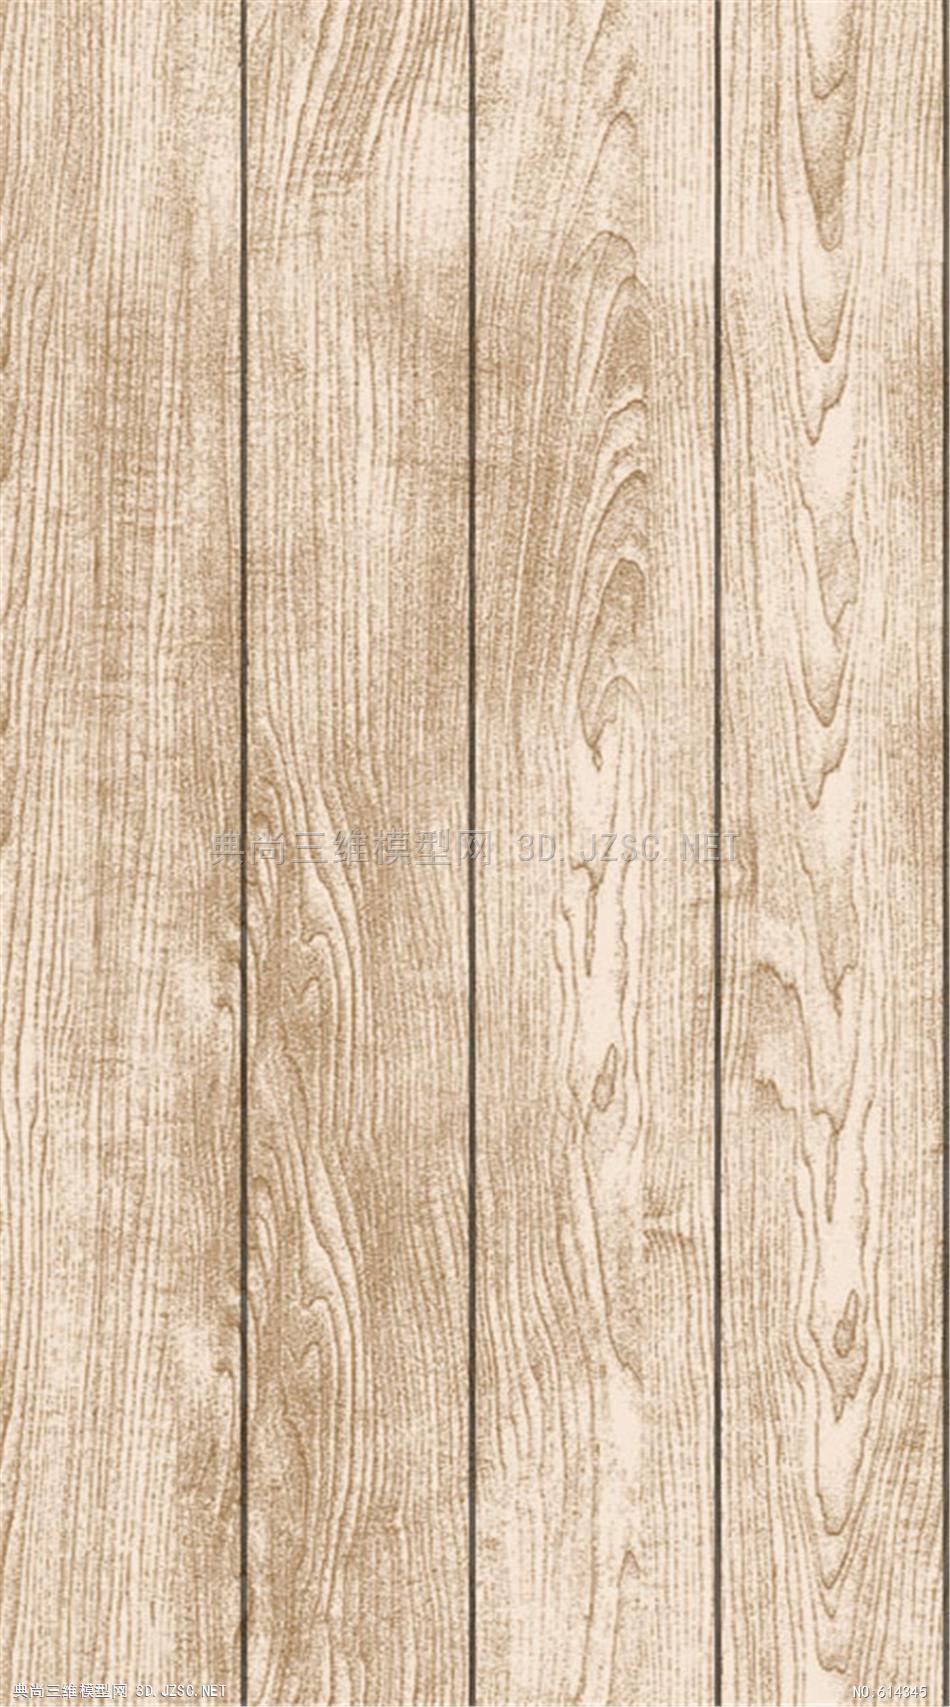 木地板 木纹 木材  高清材质贴图 (109)